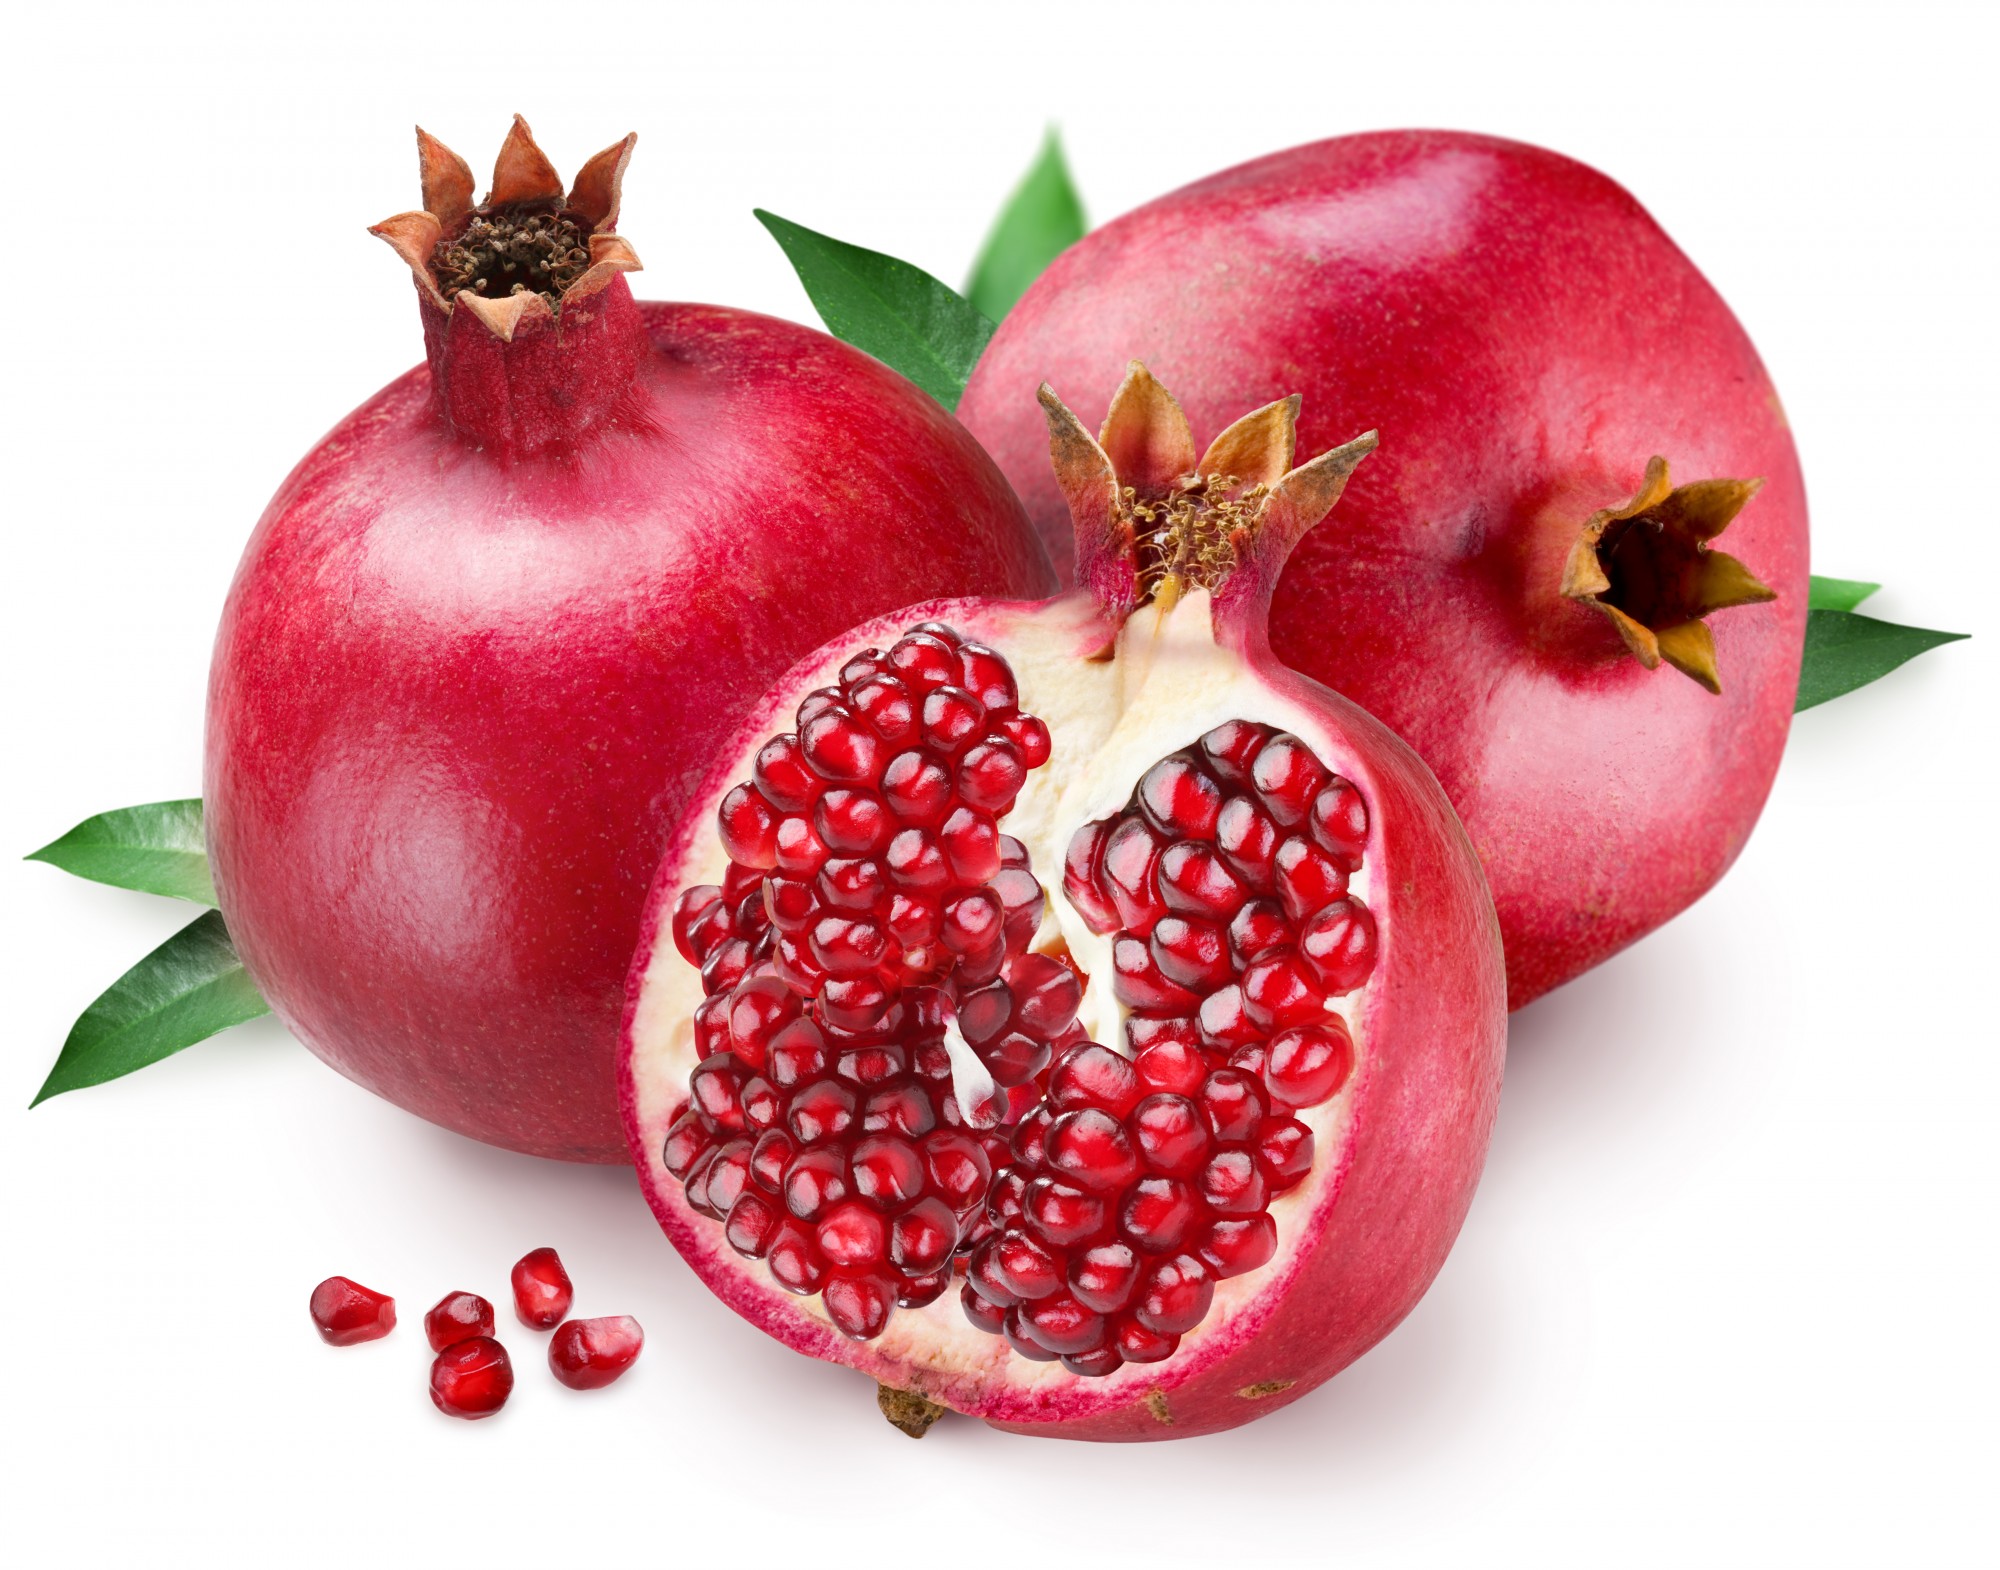 انار : Pomegranate  تركيبات شيميايي/خواص داروئي...